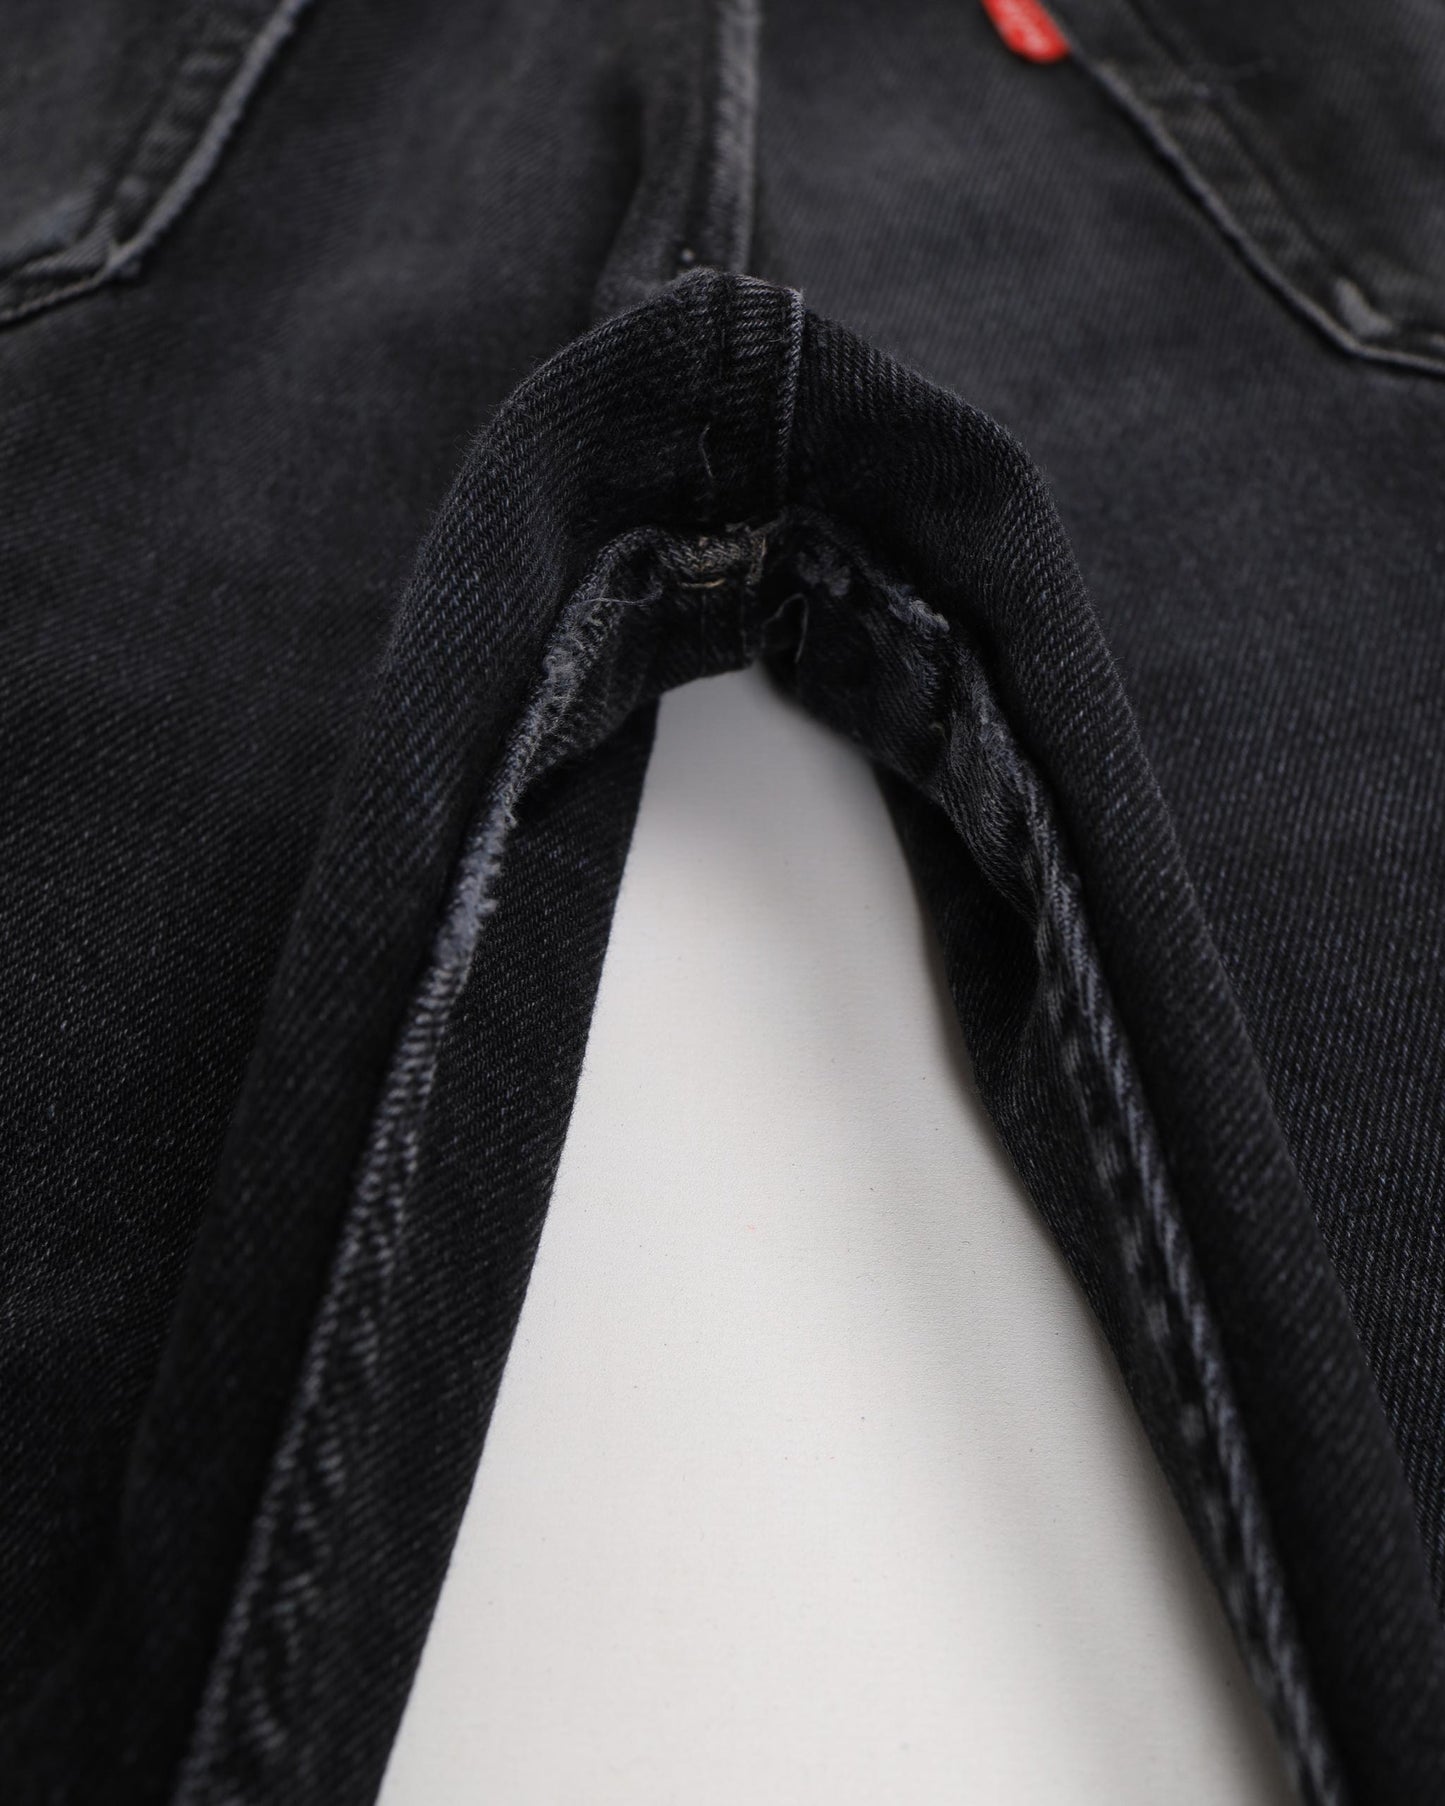 Jeans vintage Levi's 501 Denim